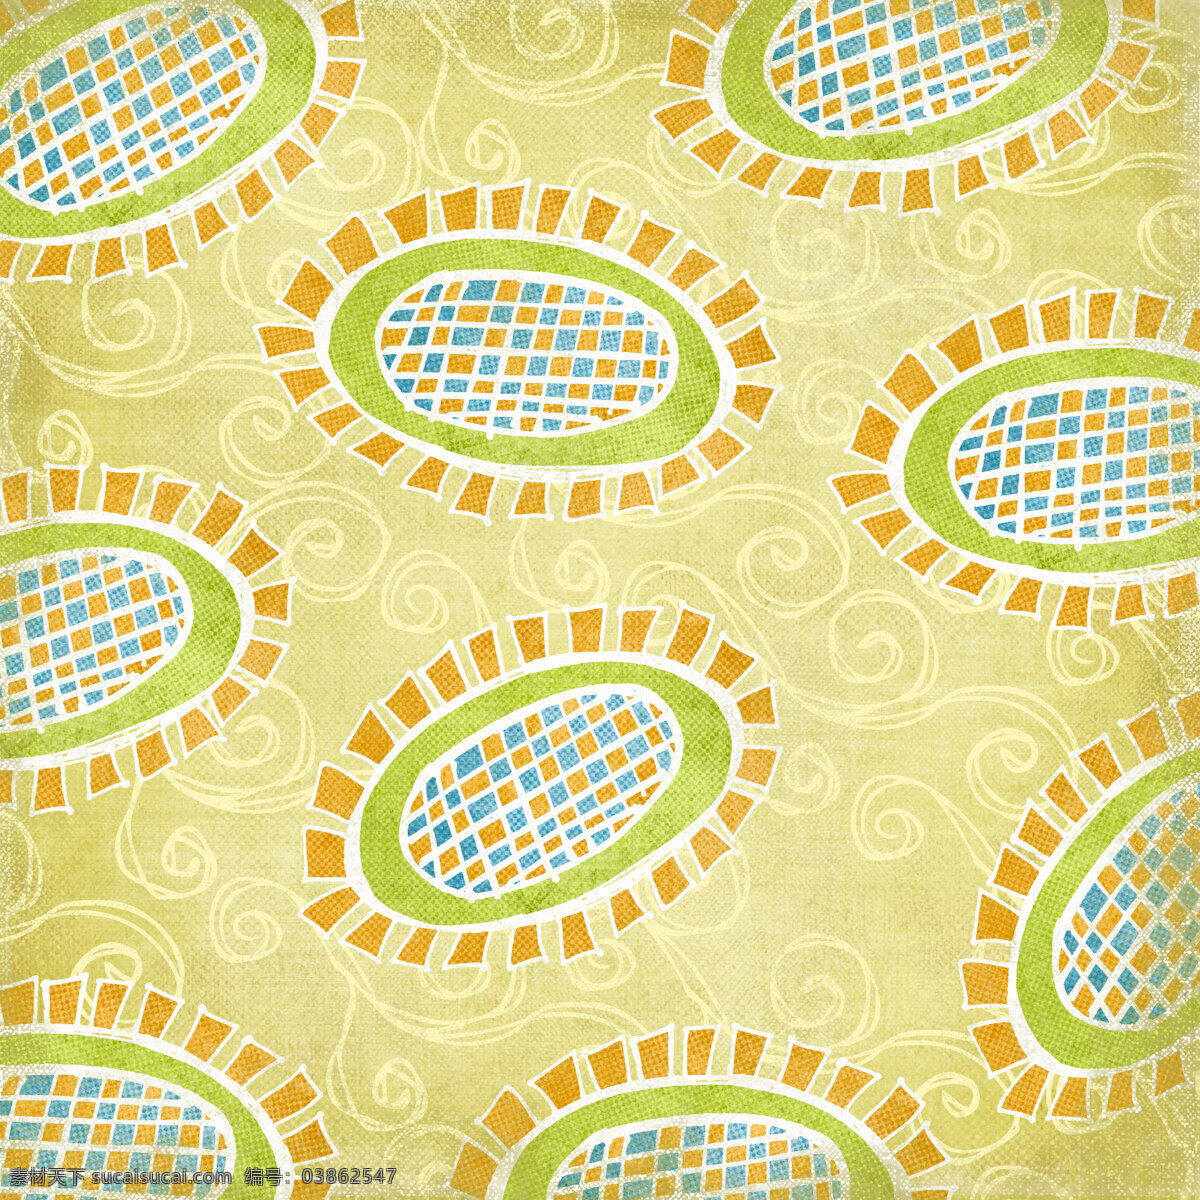 手绘 卡通 地毯 背景 图 椭圆形 橘色 绿色 黄色 背景素材